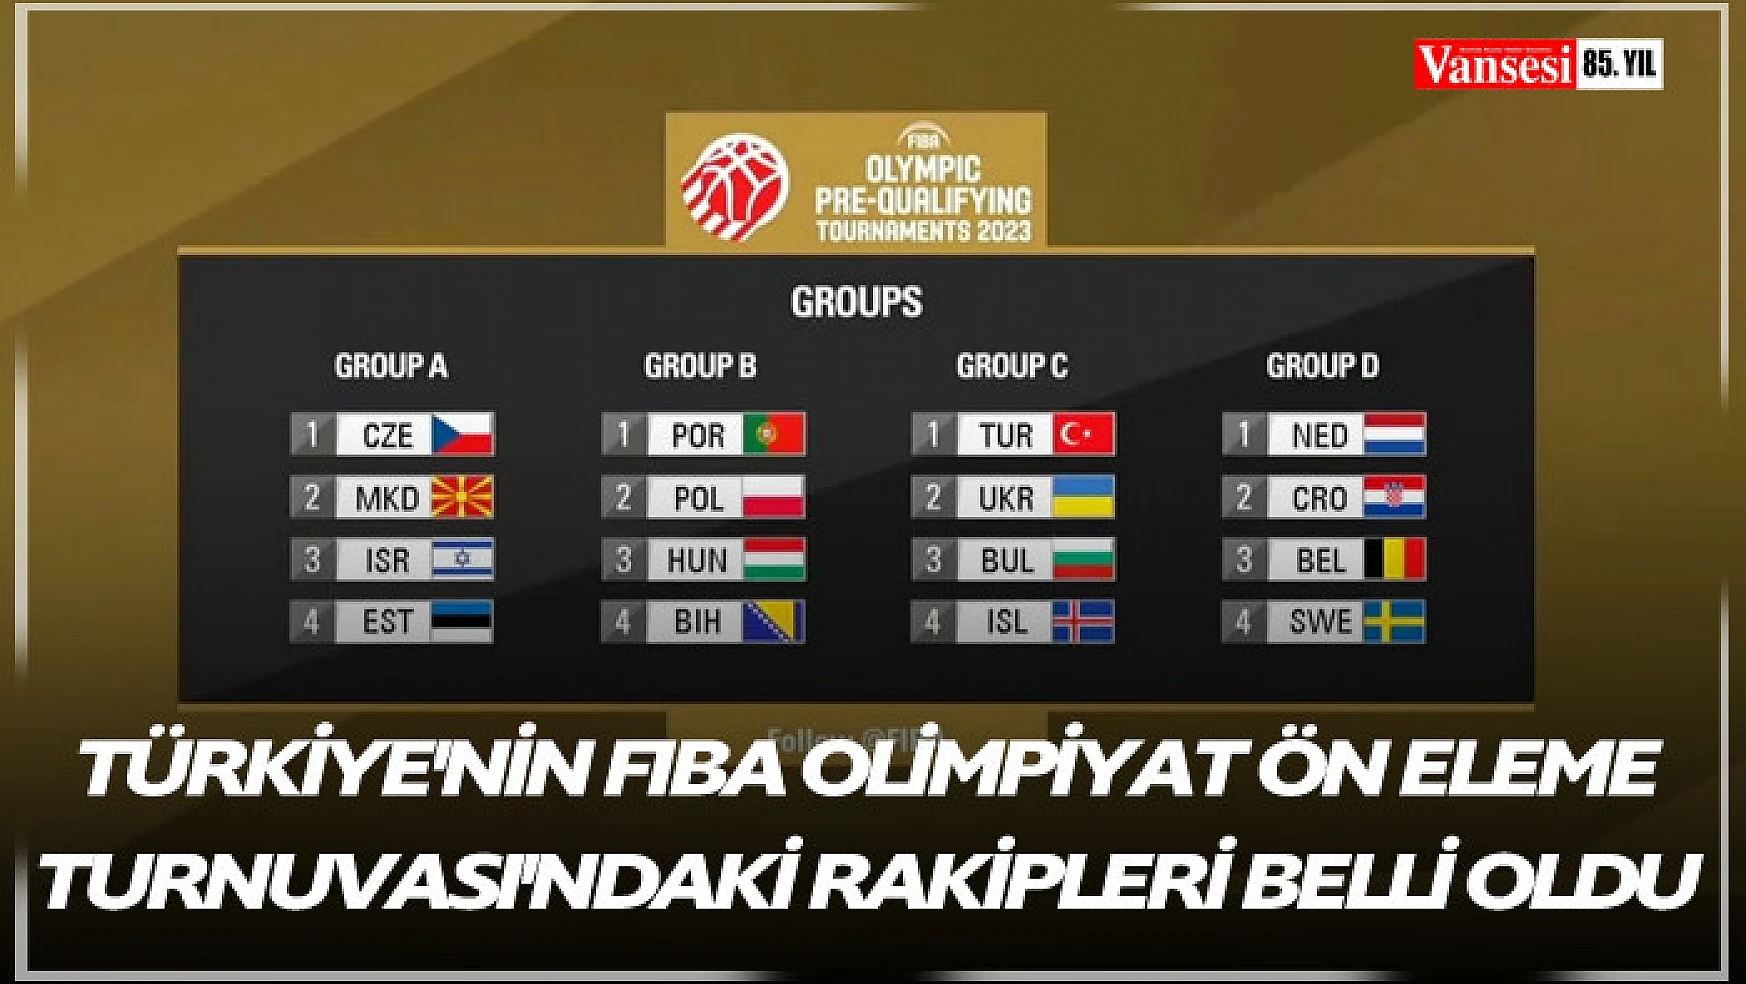 Türkiye'nin FIBA Olimpiyat Ön Eleme Turnuvası'ndaki rakipleri belli oldu